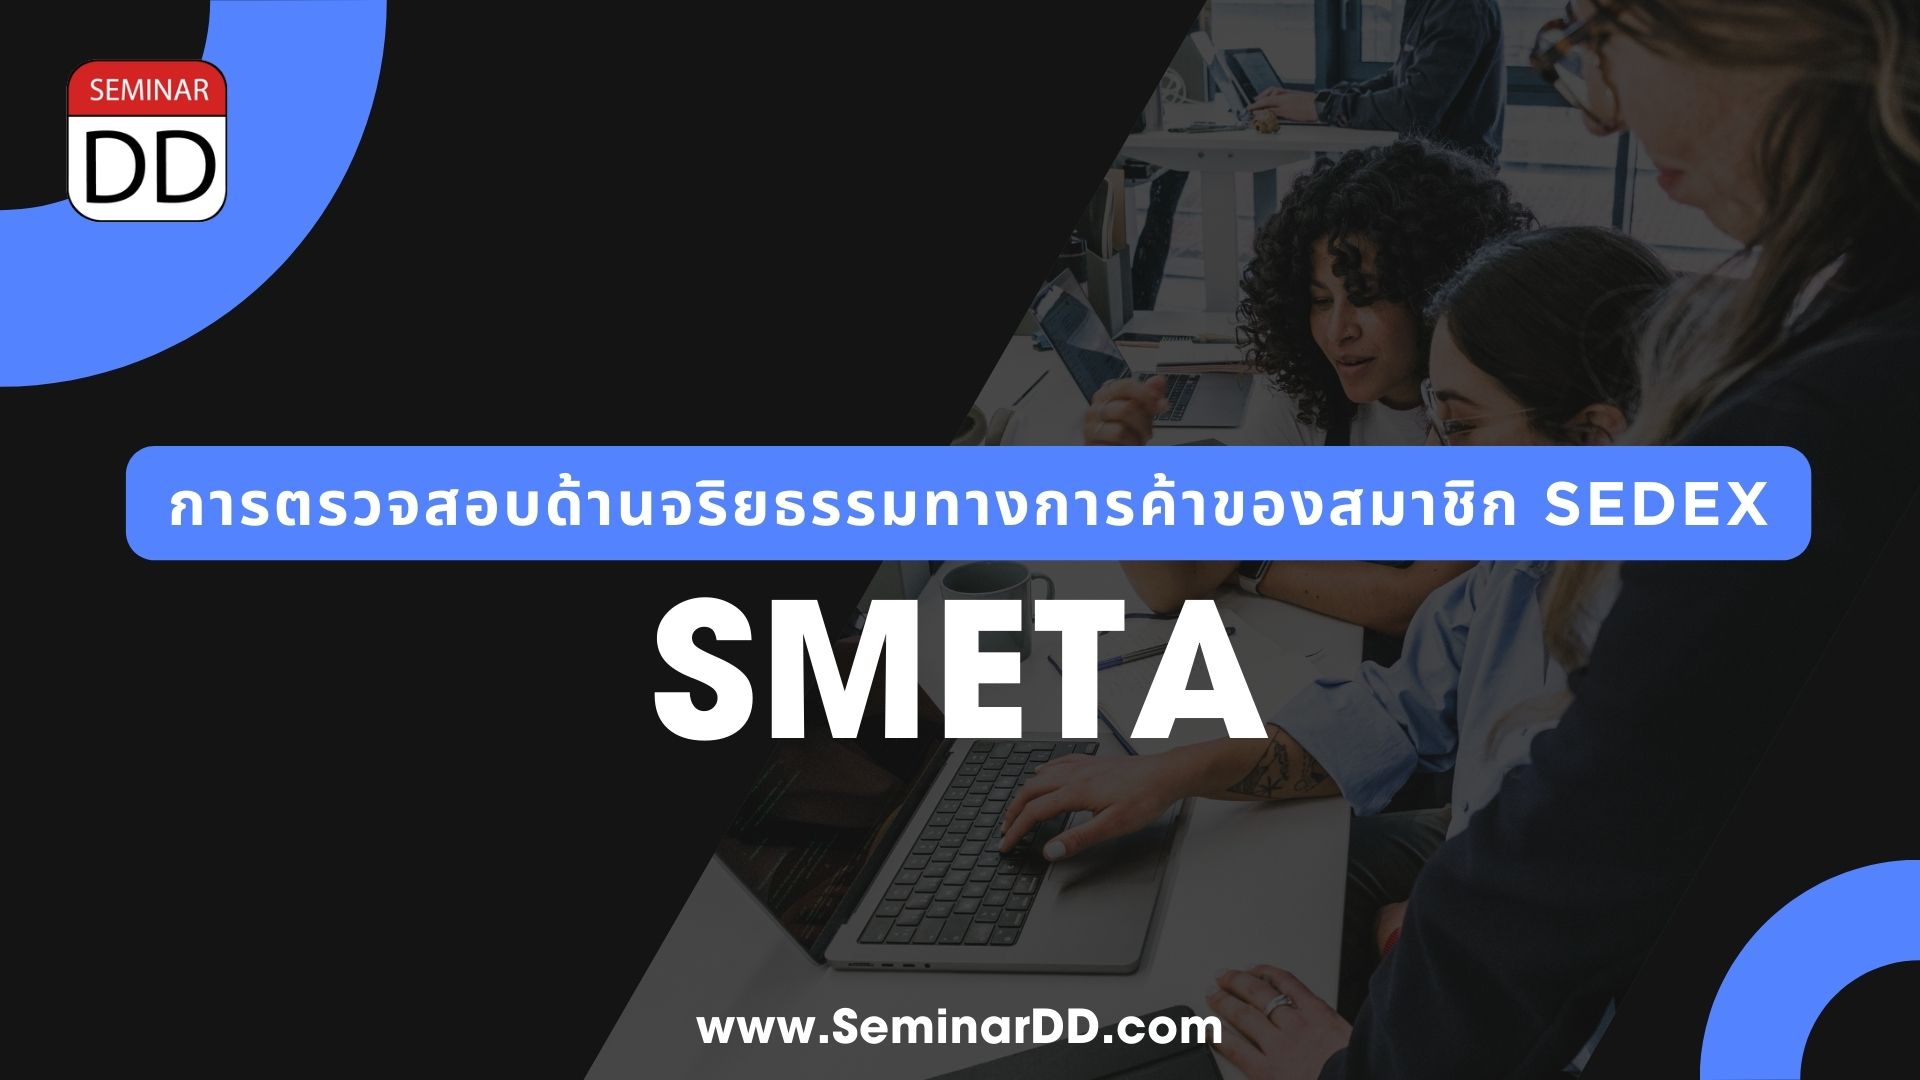 หลักสูตร การตรวจสอบด้านจริยธรรมทางการค้าของสมาชิก Sedex  ( SMETA )